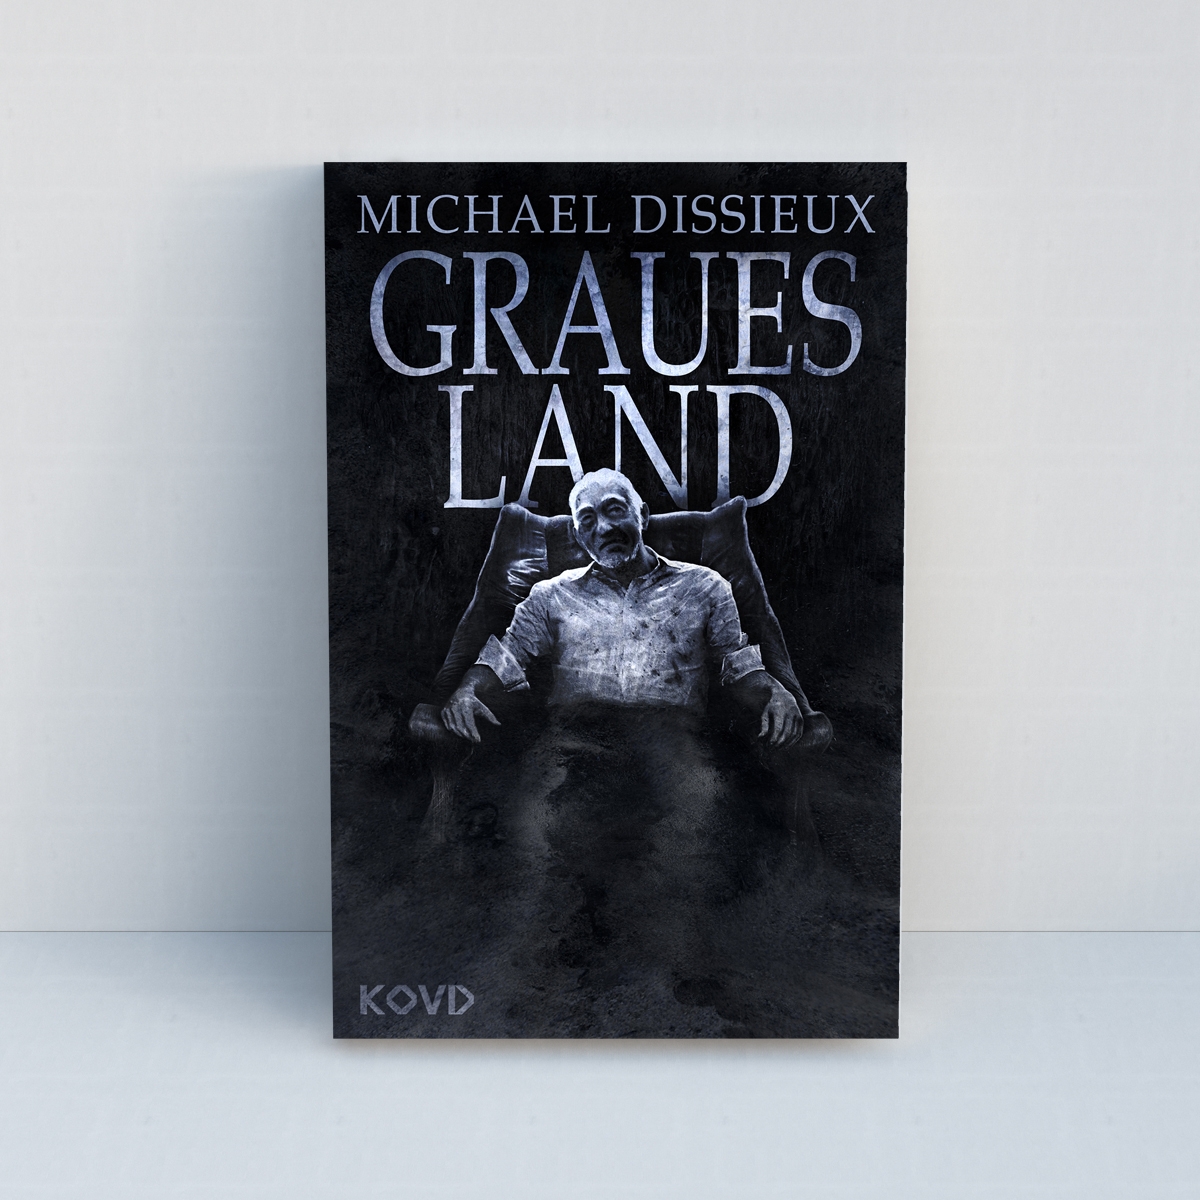 Graues Land von Michael Dissieux - Standard Edition